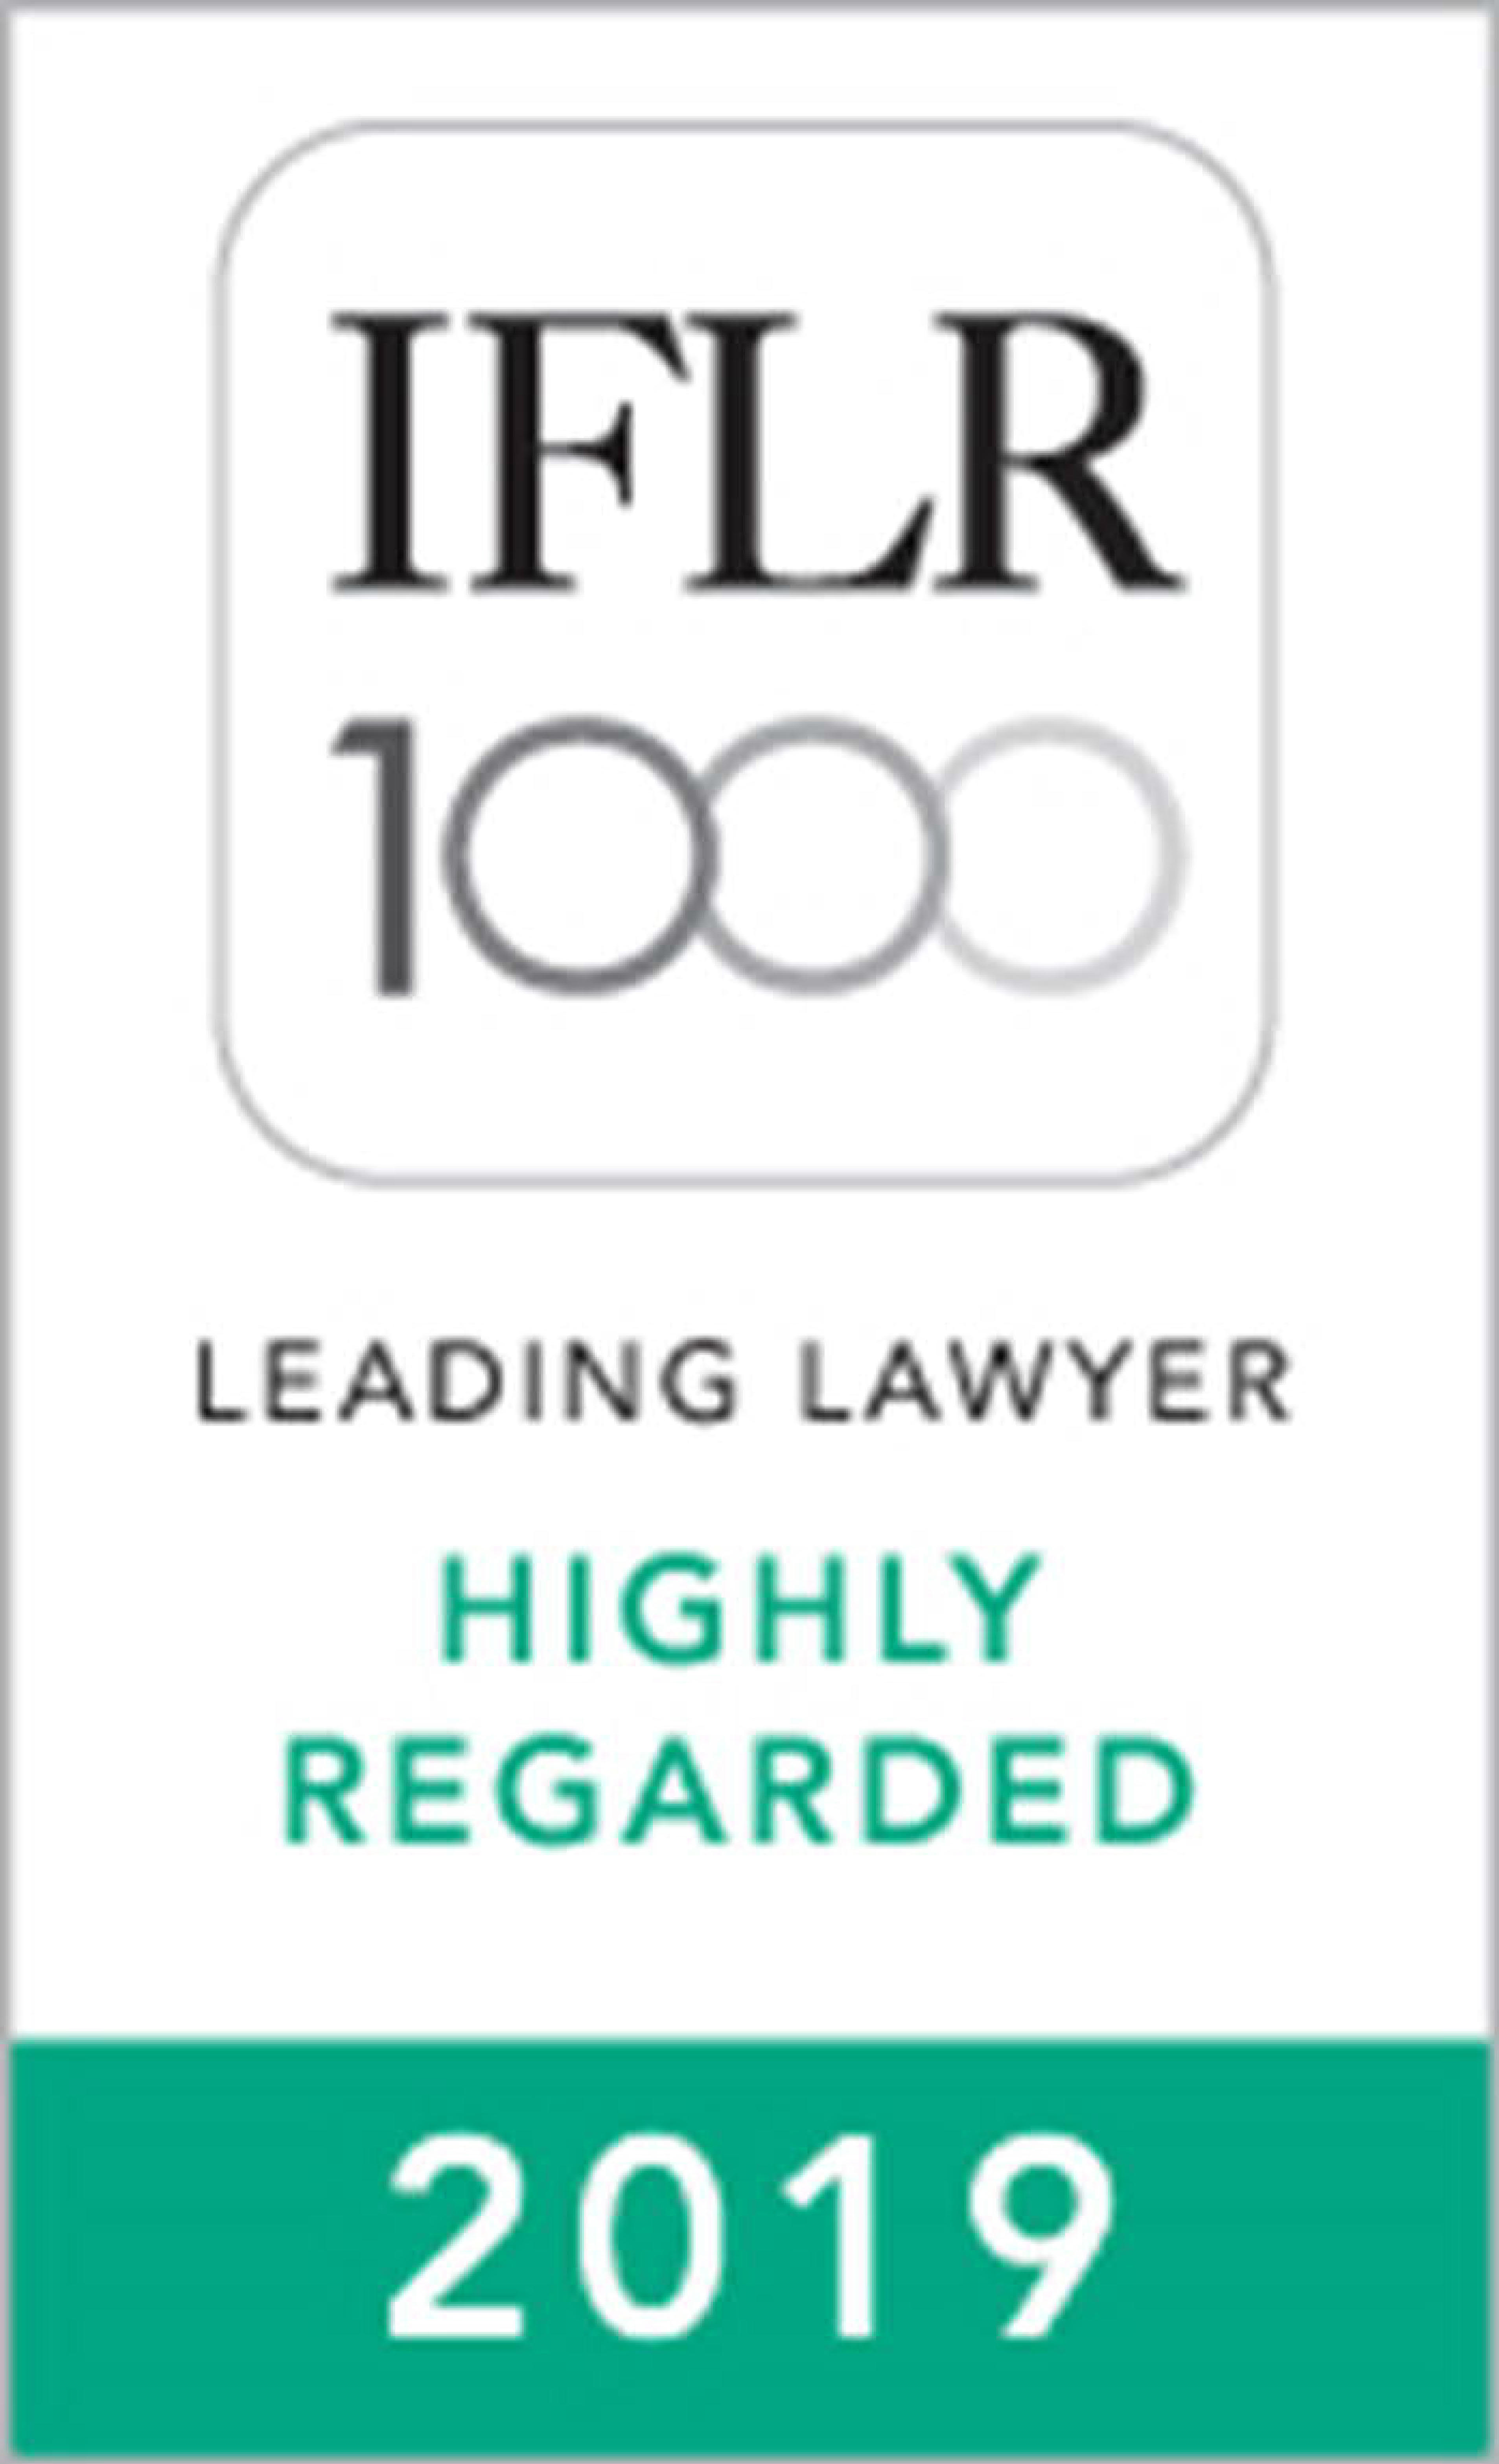 2015 至 2019年《国际金融法律评论 1000》(IFLR1000) 亚太区高度推荐领先律师：金融及企业法